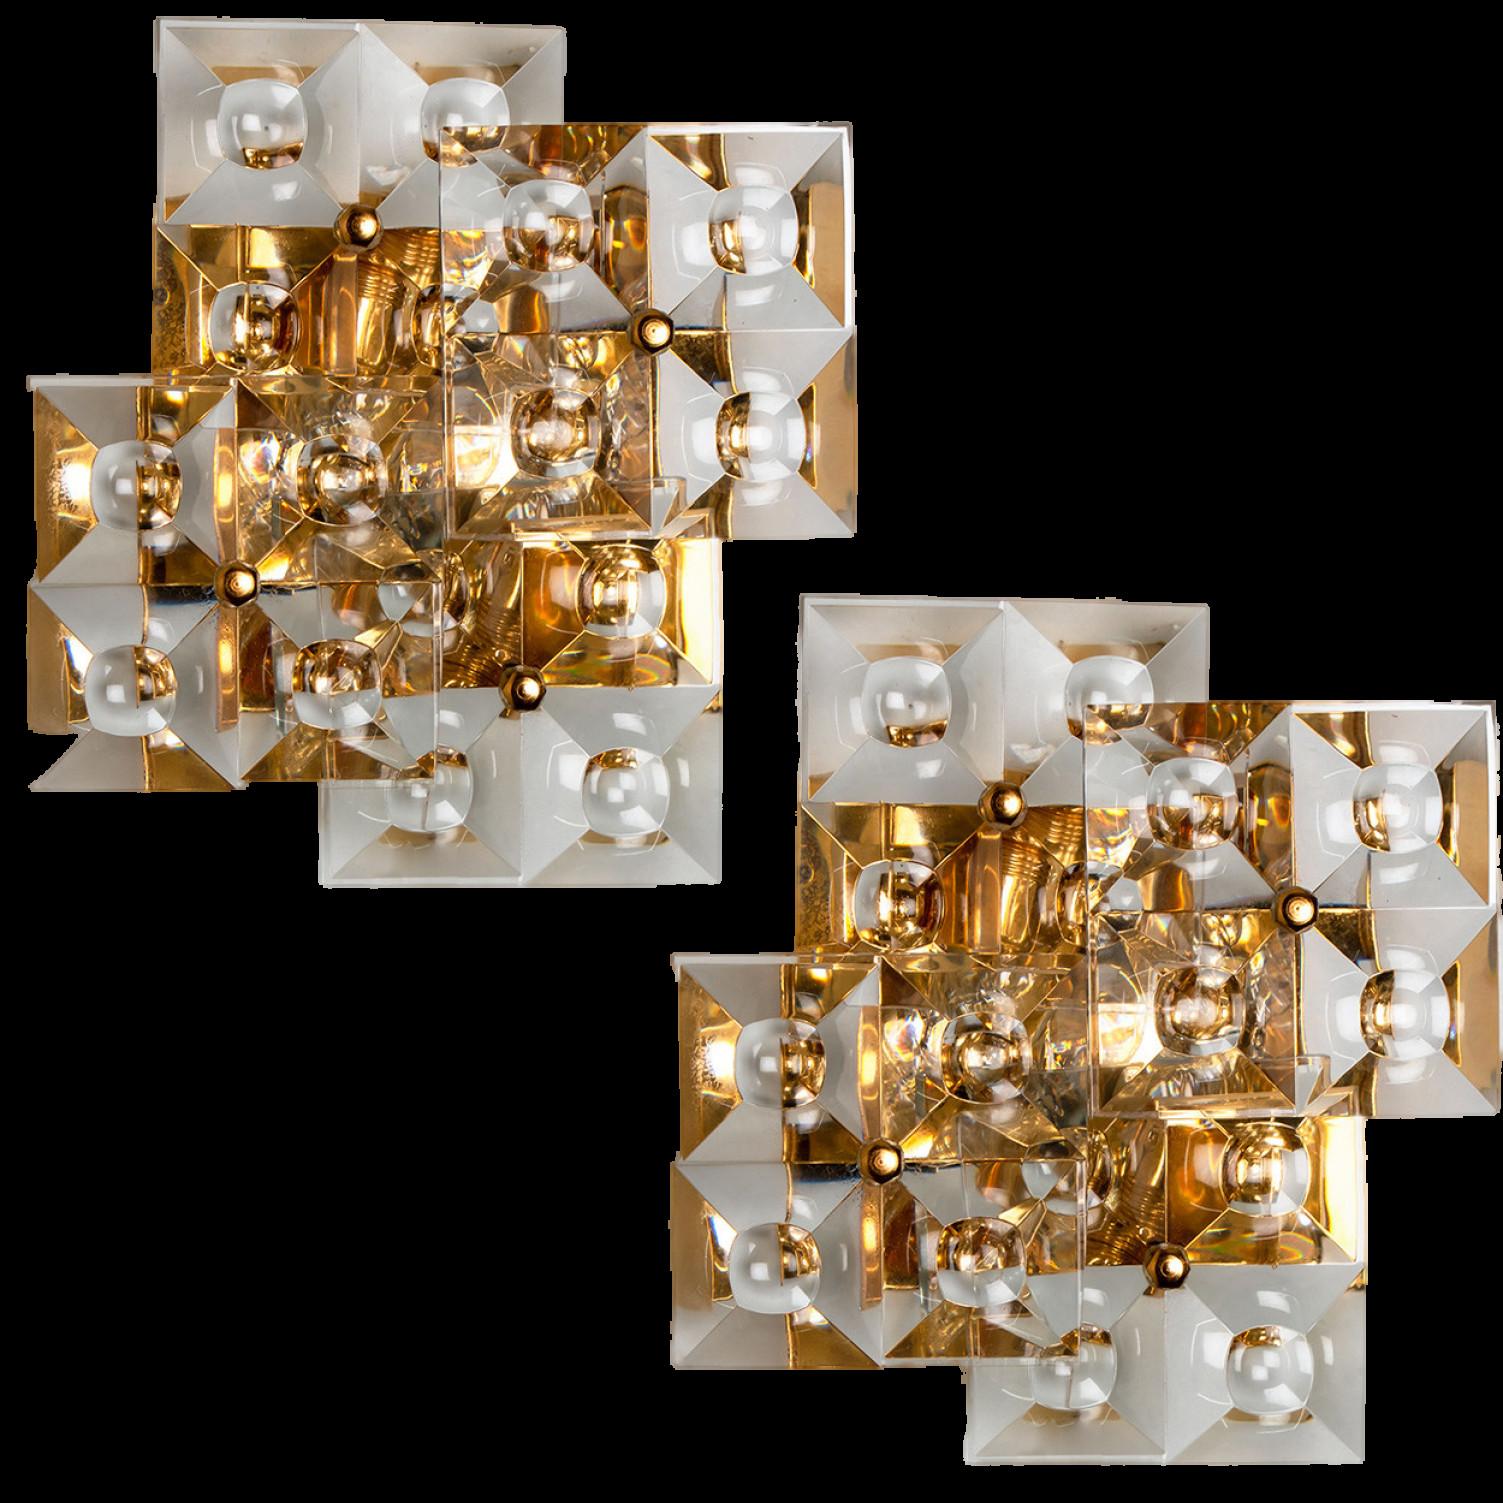 Paar goldene Wandleuchter mit Kristallgläsern, Kinkeldey, Deutschland, um 1970-1979.
Er besteht aus vier quadratischen Kristallgläsern auf einem vergoldeten Messingrahmen. Das Beste aus den 1970er Jahren aus Deutschland.
In ausgezeichnetem